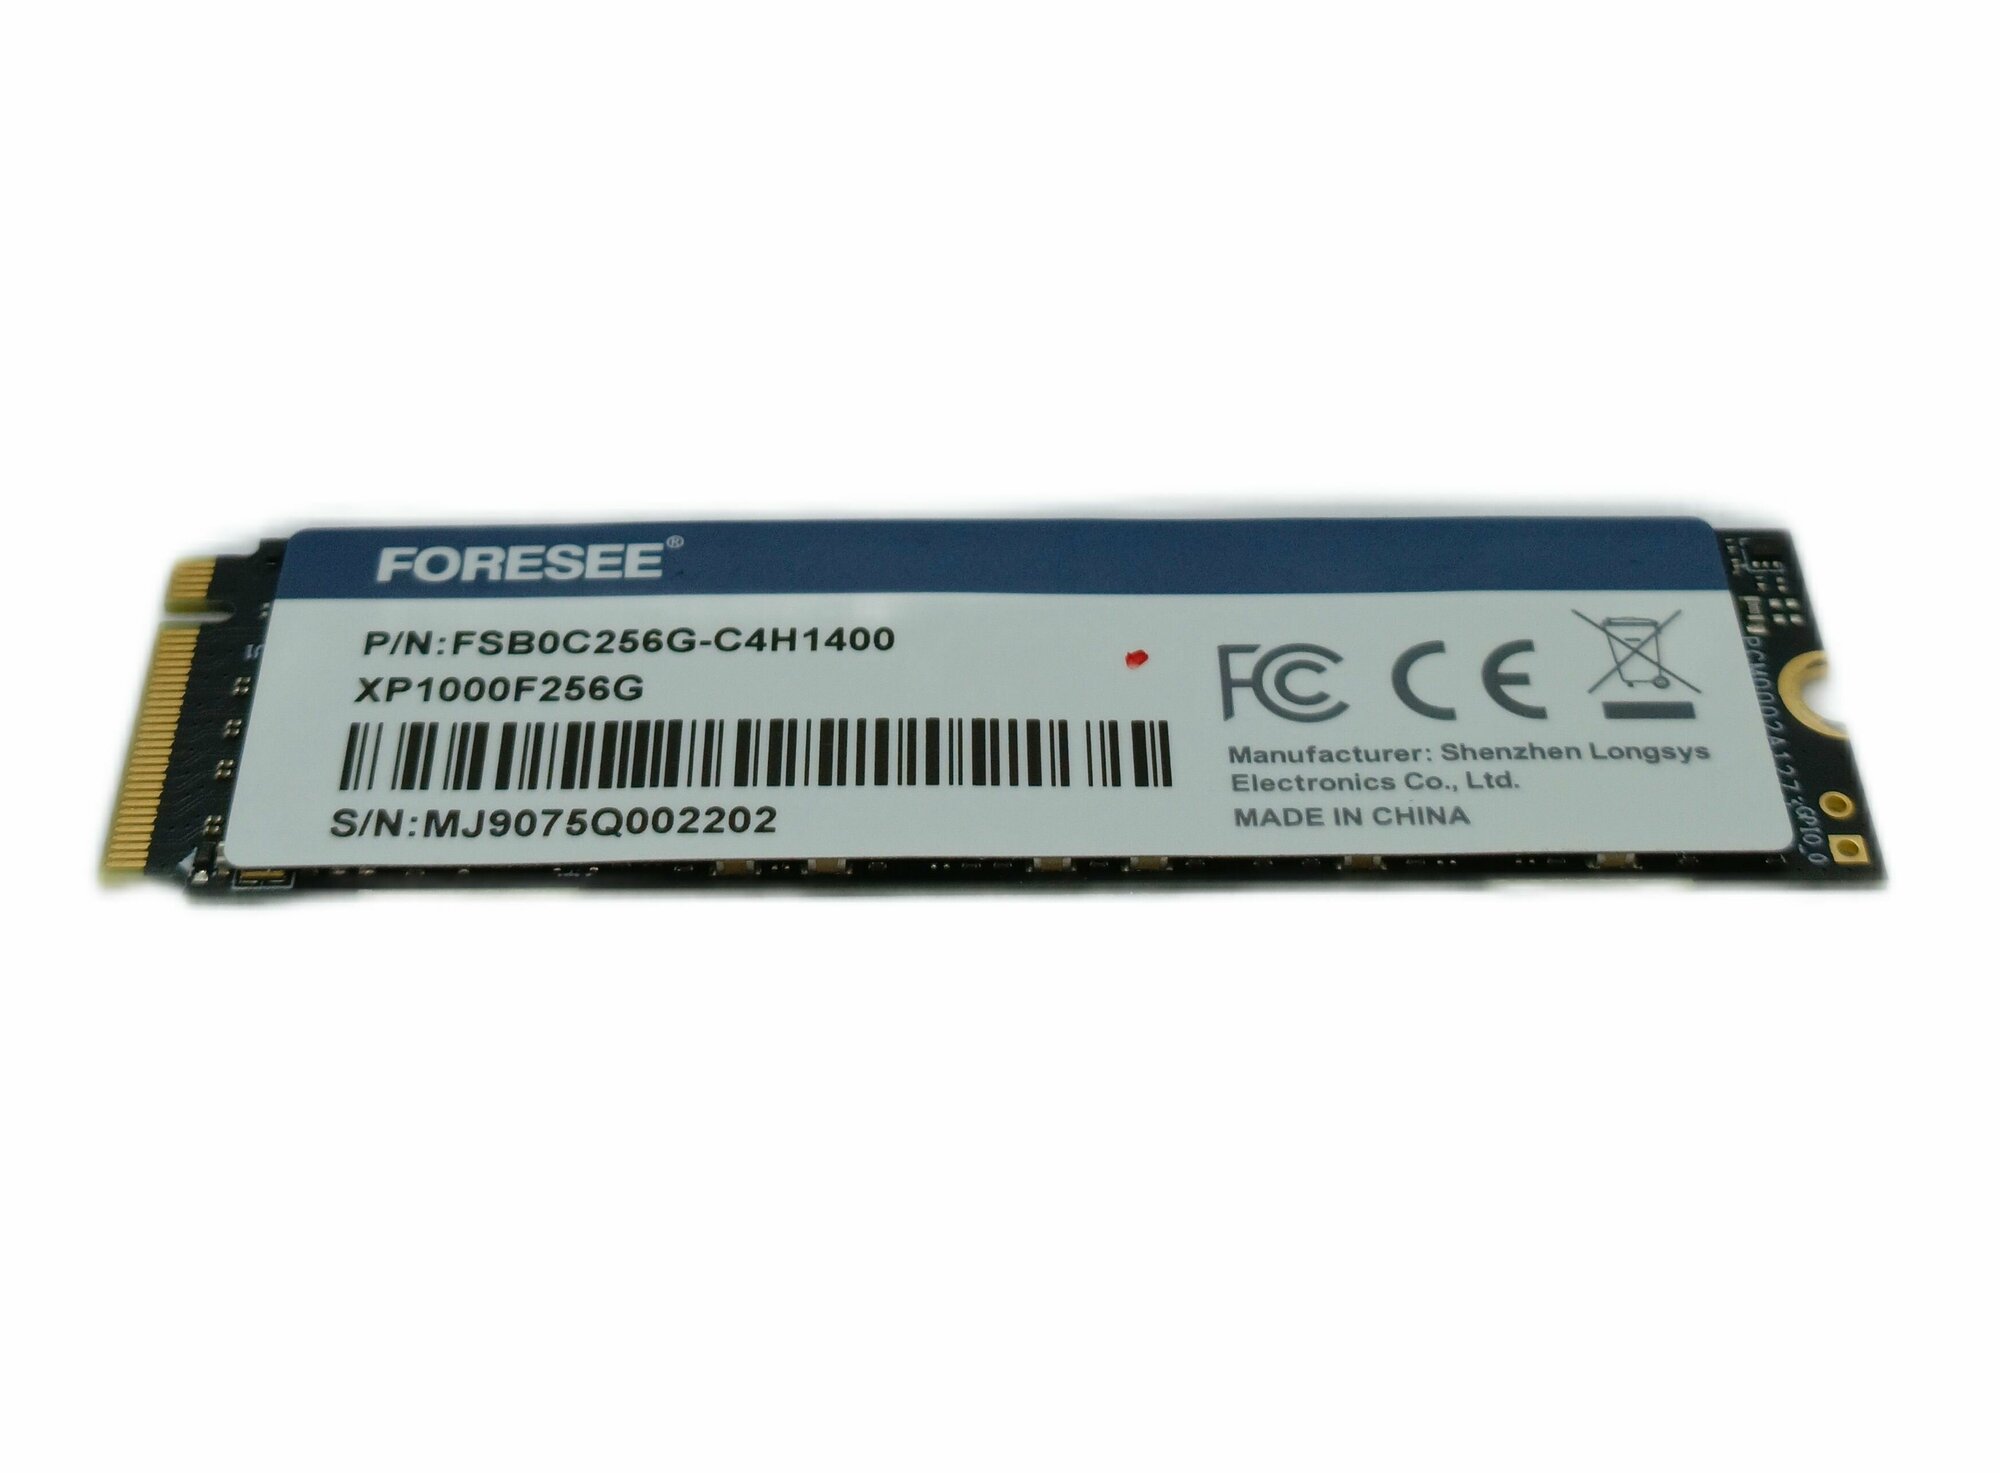 256 ГБ Внутренний SSD-диск Foresee XP1000F256G (FSB0C256G-C4H1400) OEM